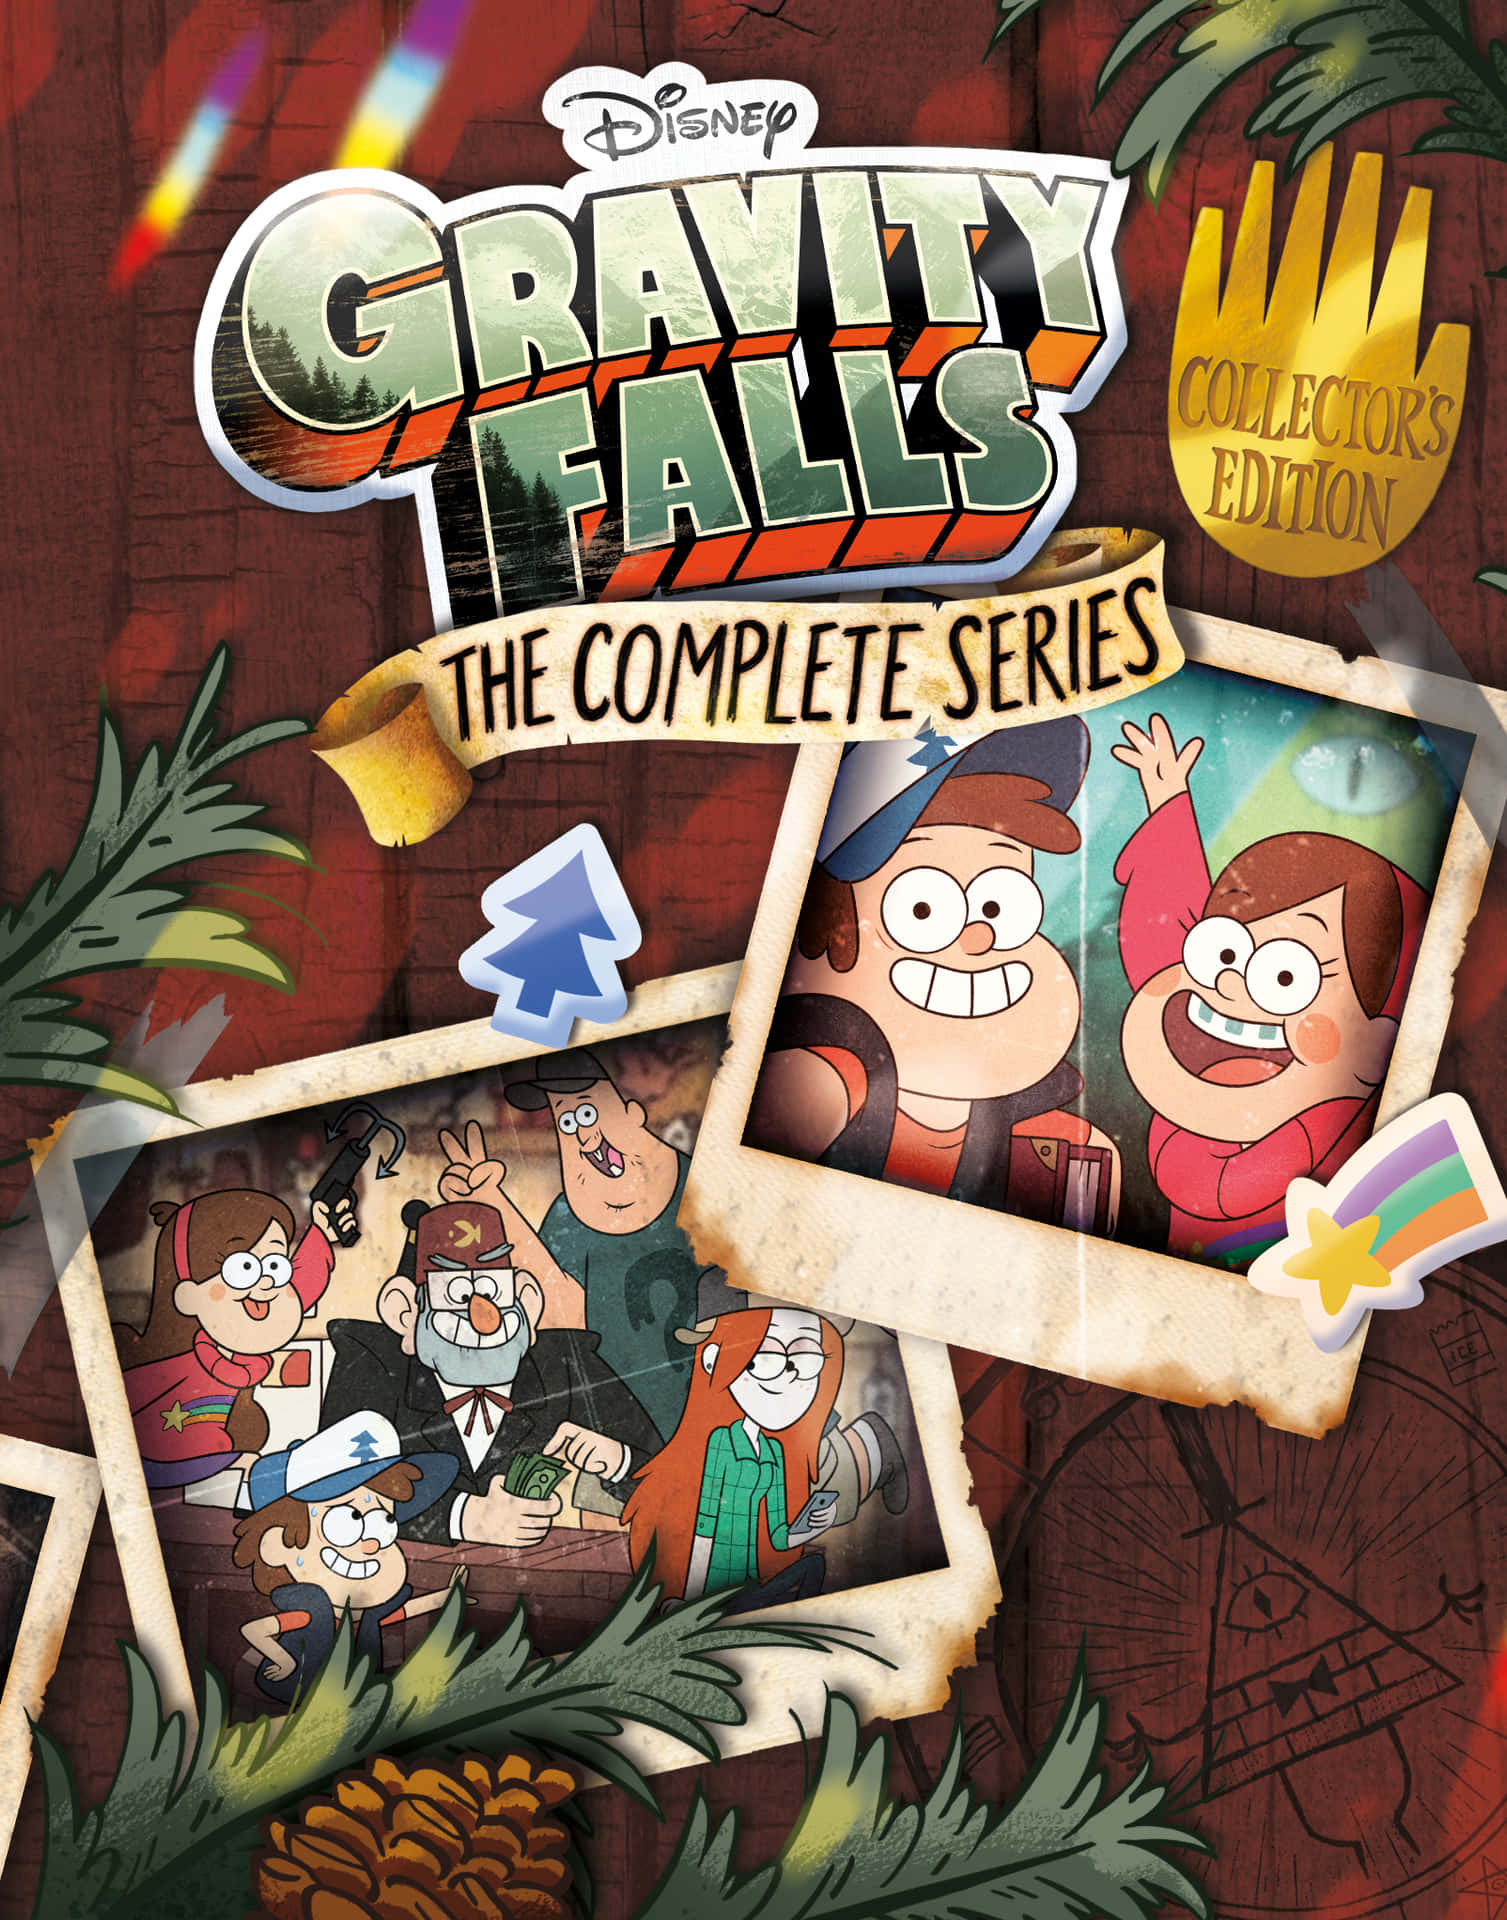 Velkommen til Gravity Falls!